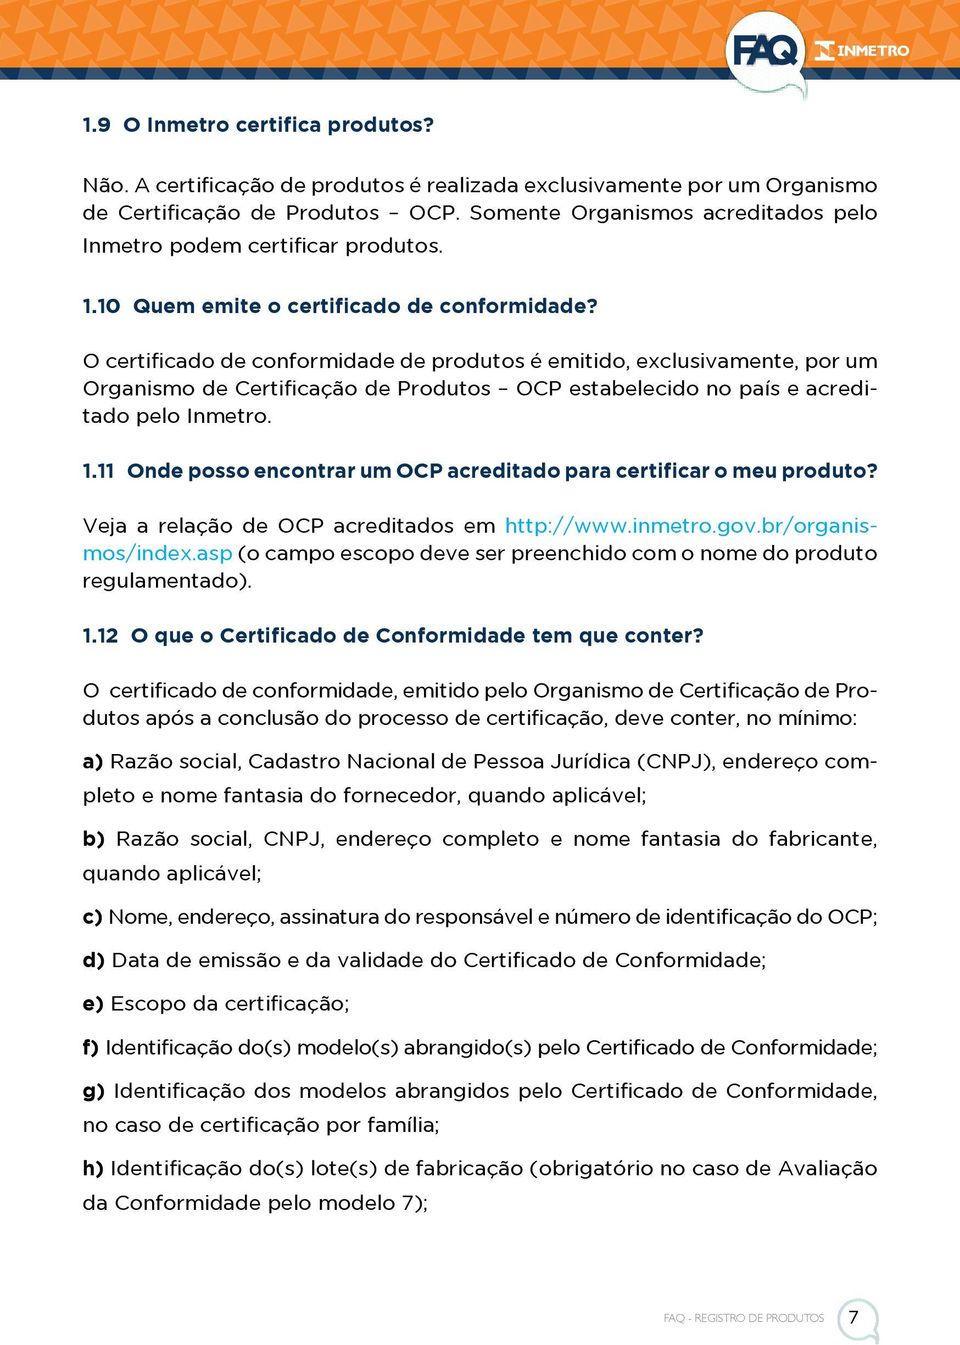 O certificado de conformidade de produtos é emitido, exclusivamente, por um Organismo de Certificação de Produtos OCP estabelecido no país e acreditado pelo Inmetro. 1.